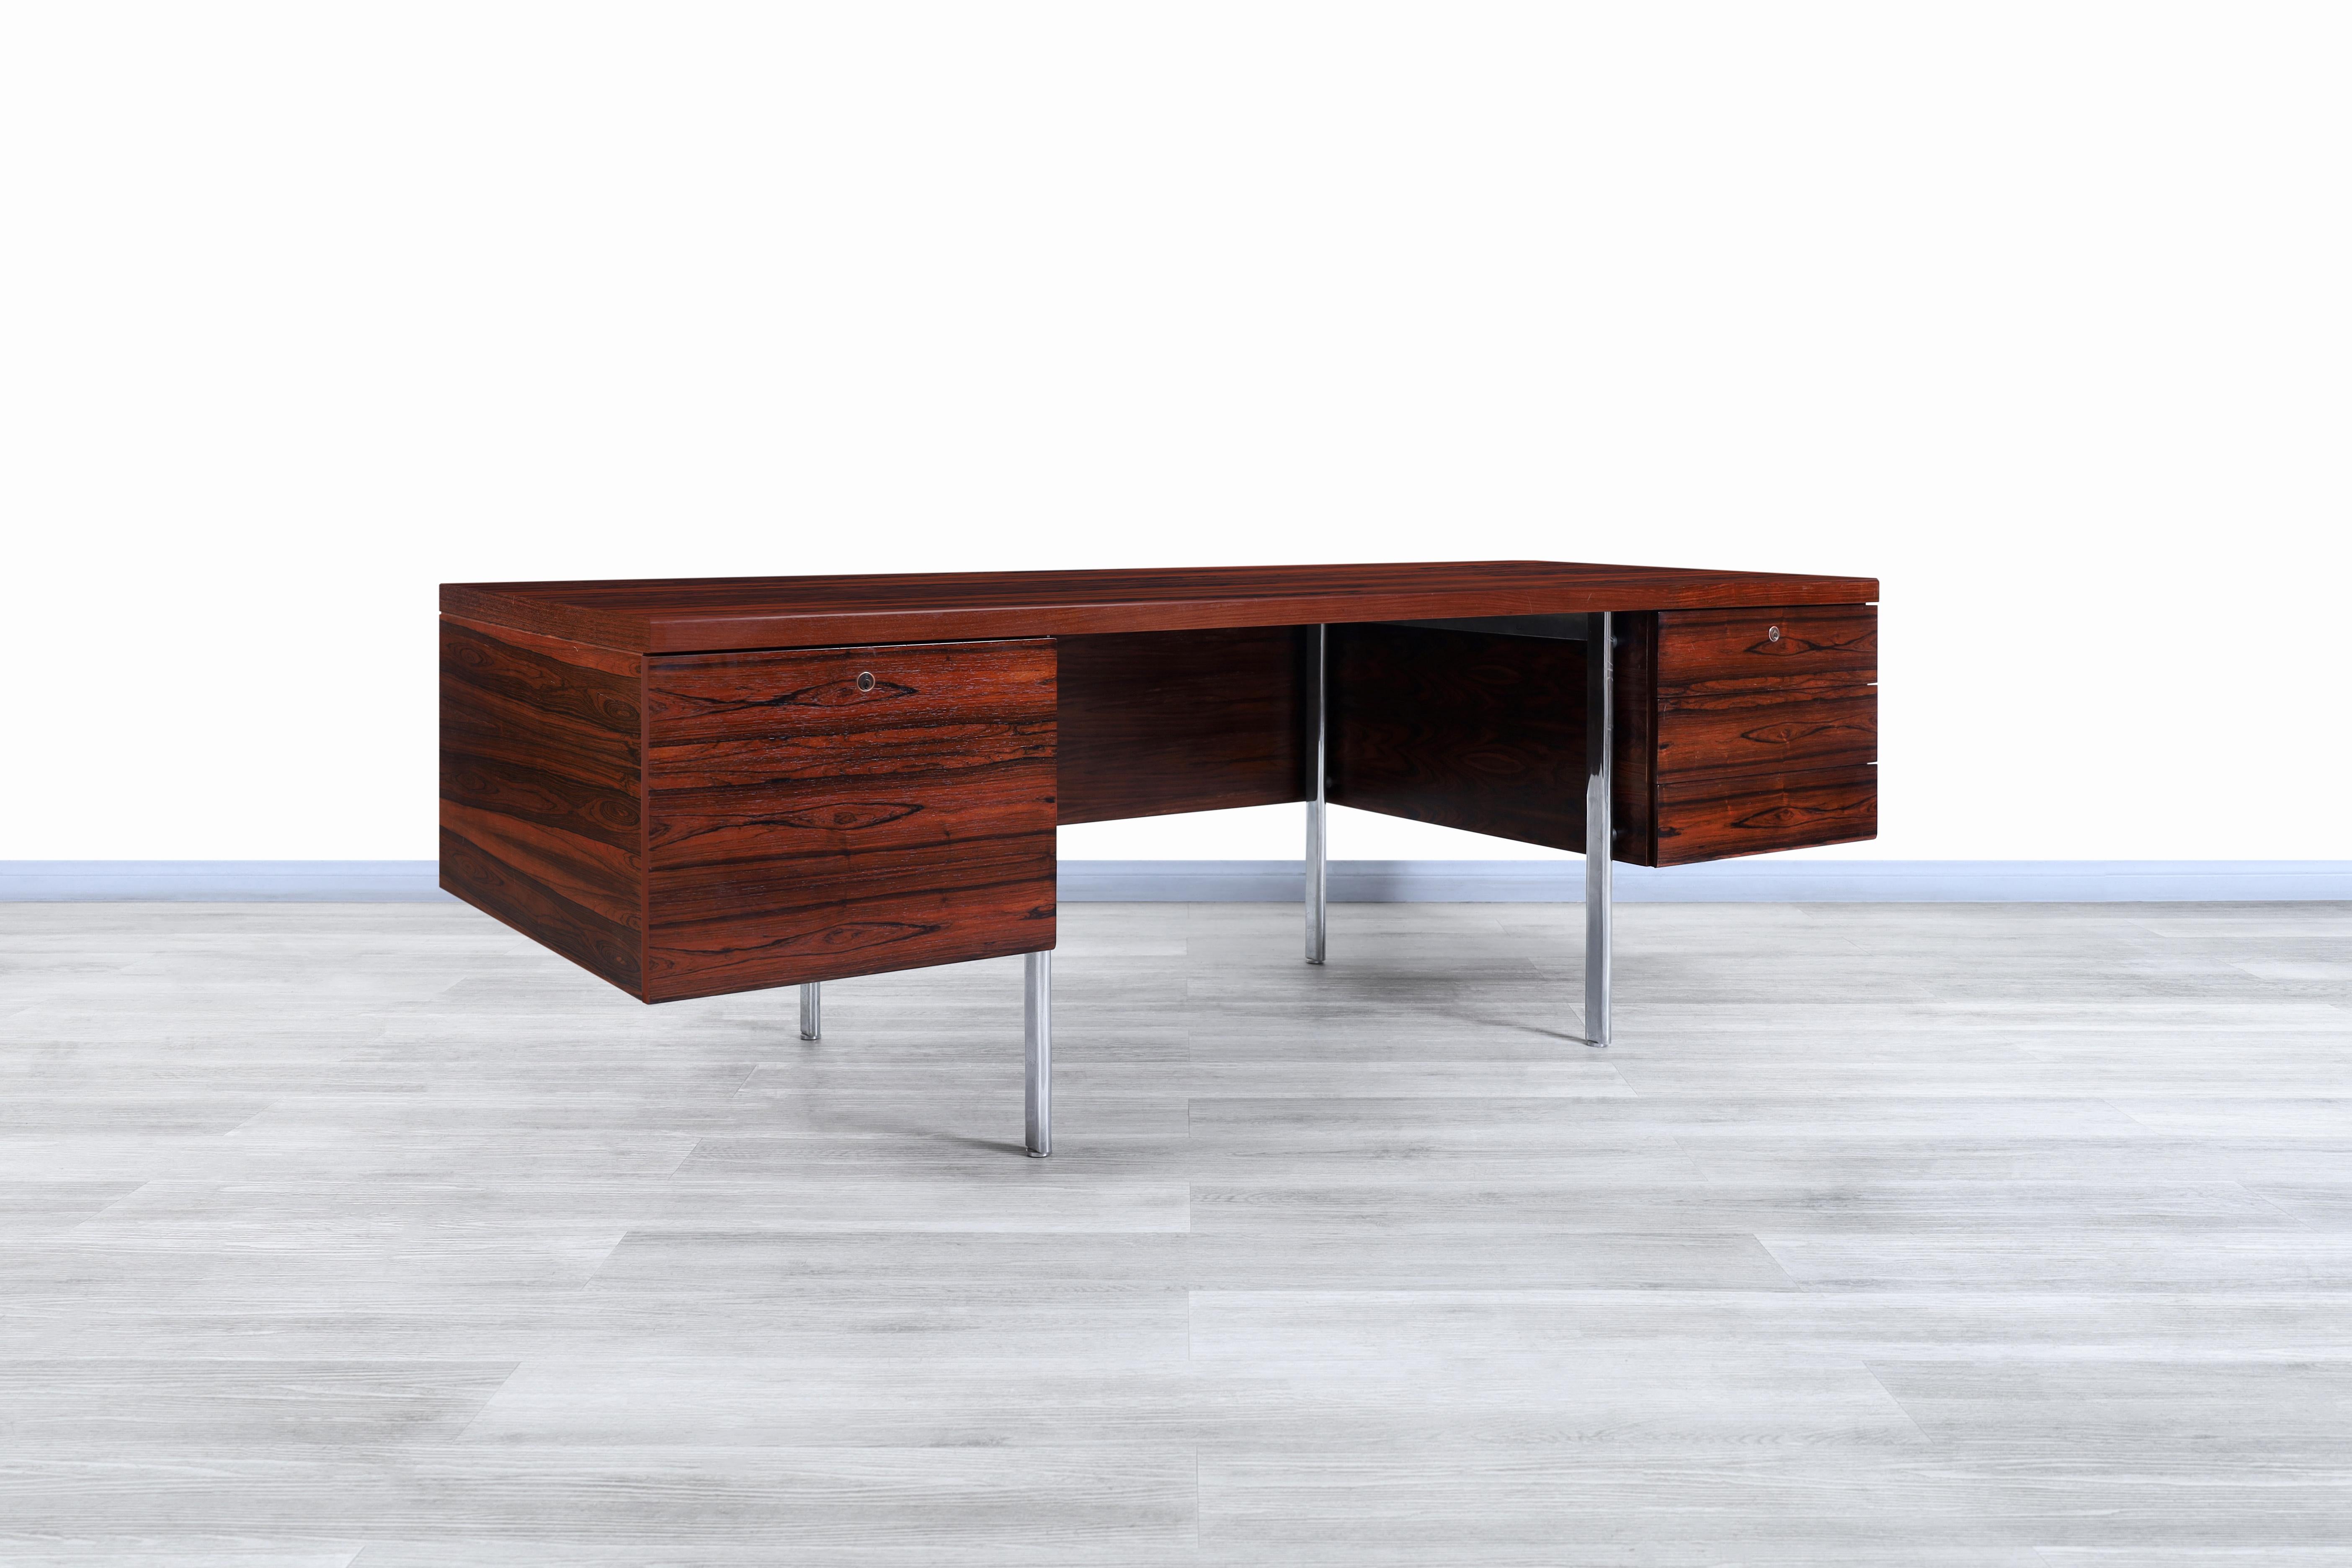 Wunderschöner moderner dänischer Schreibtisch aus Palisanderholz, entworfen und hergestellt in Dänemark, ca. 1960er Jahre. Dieser Schreibtisch hat ein ganz besonderes Design, das sich darauf konzentriert, dem Benutzer eine große Arbeitsfläche und